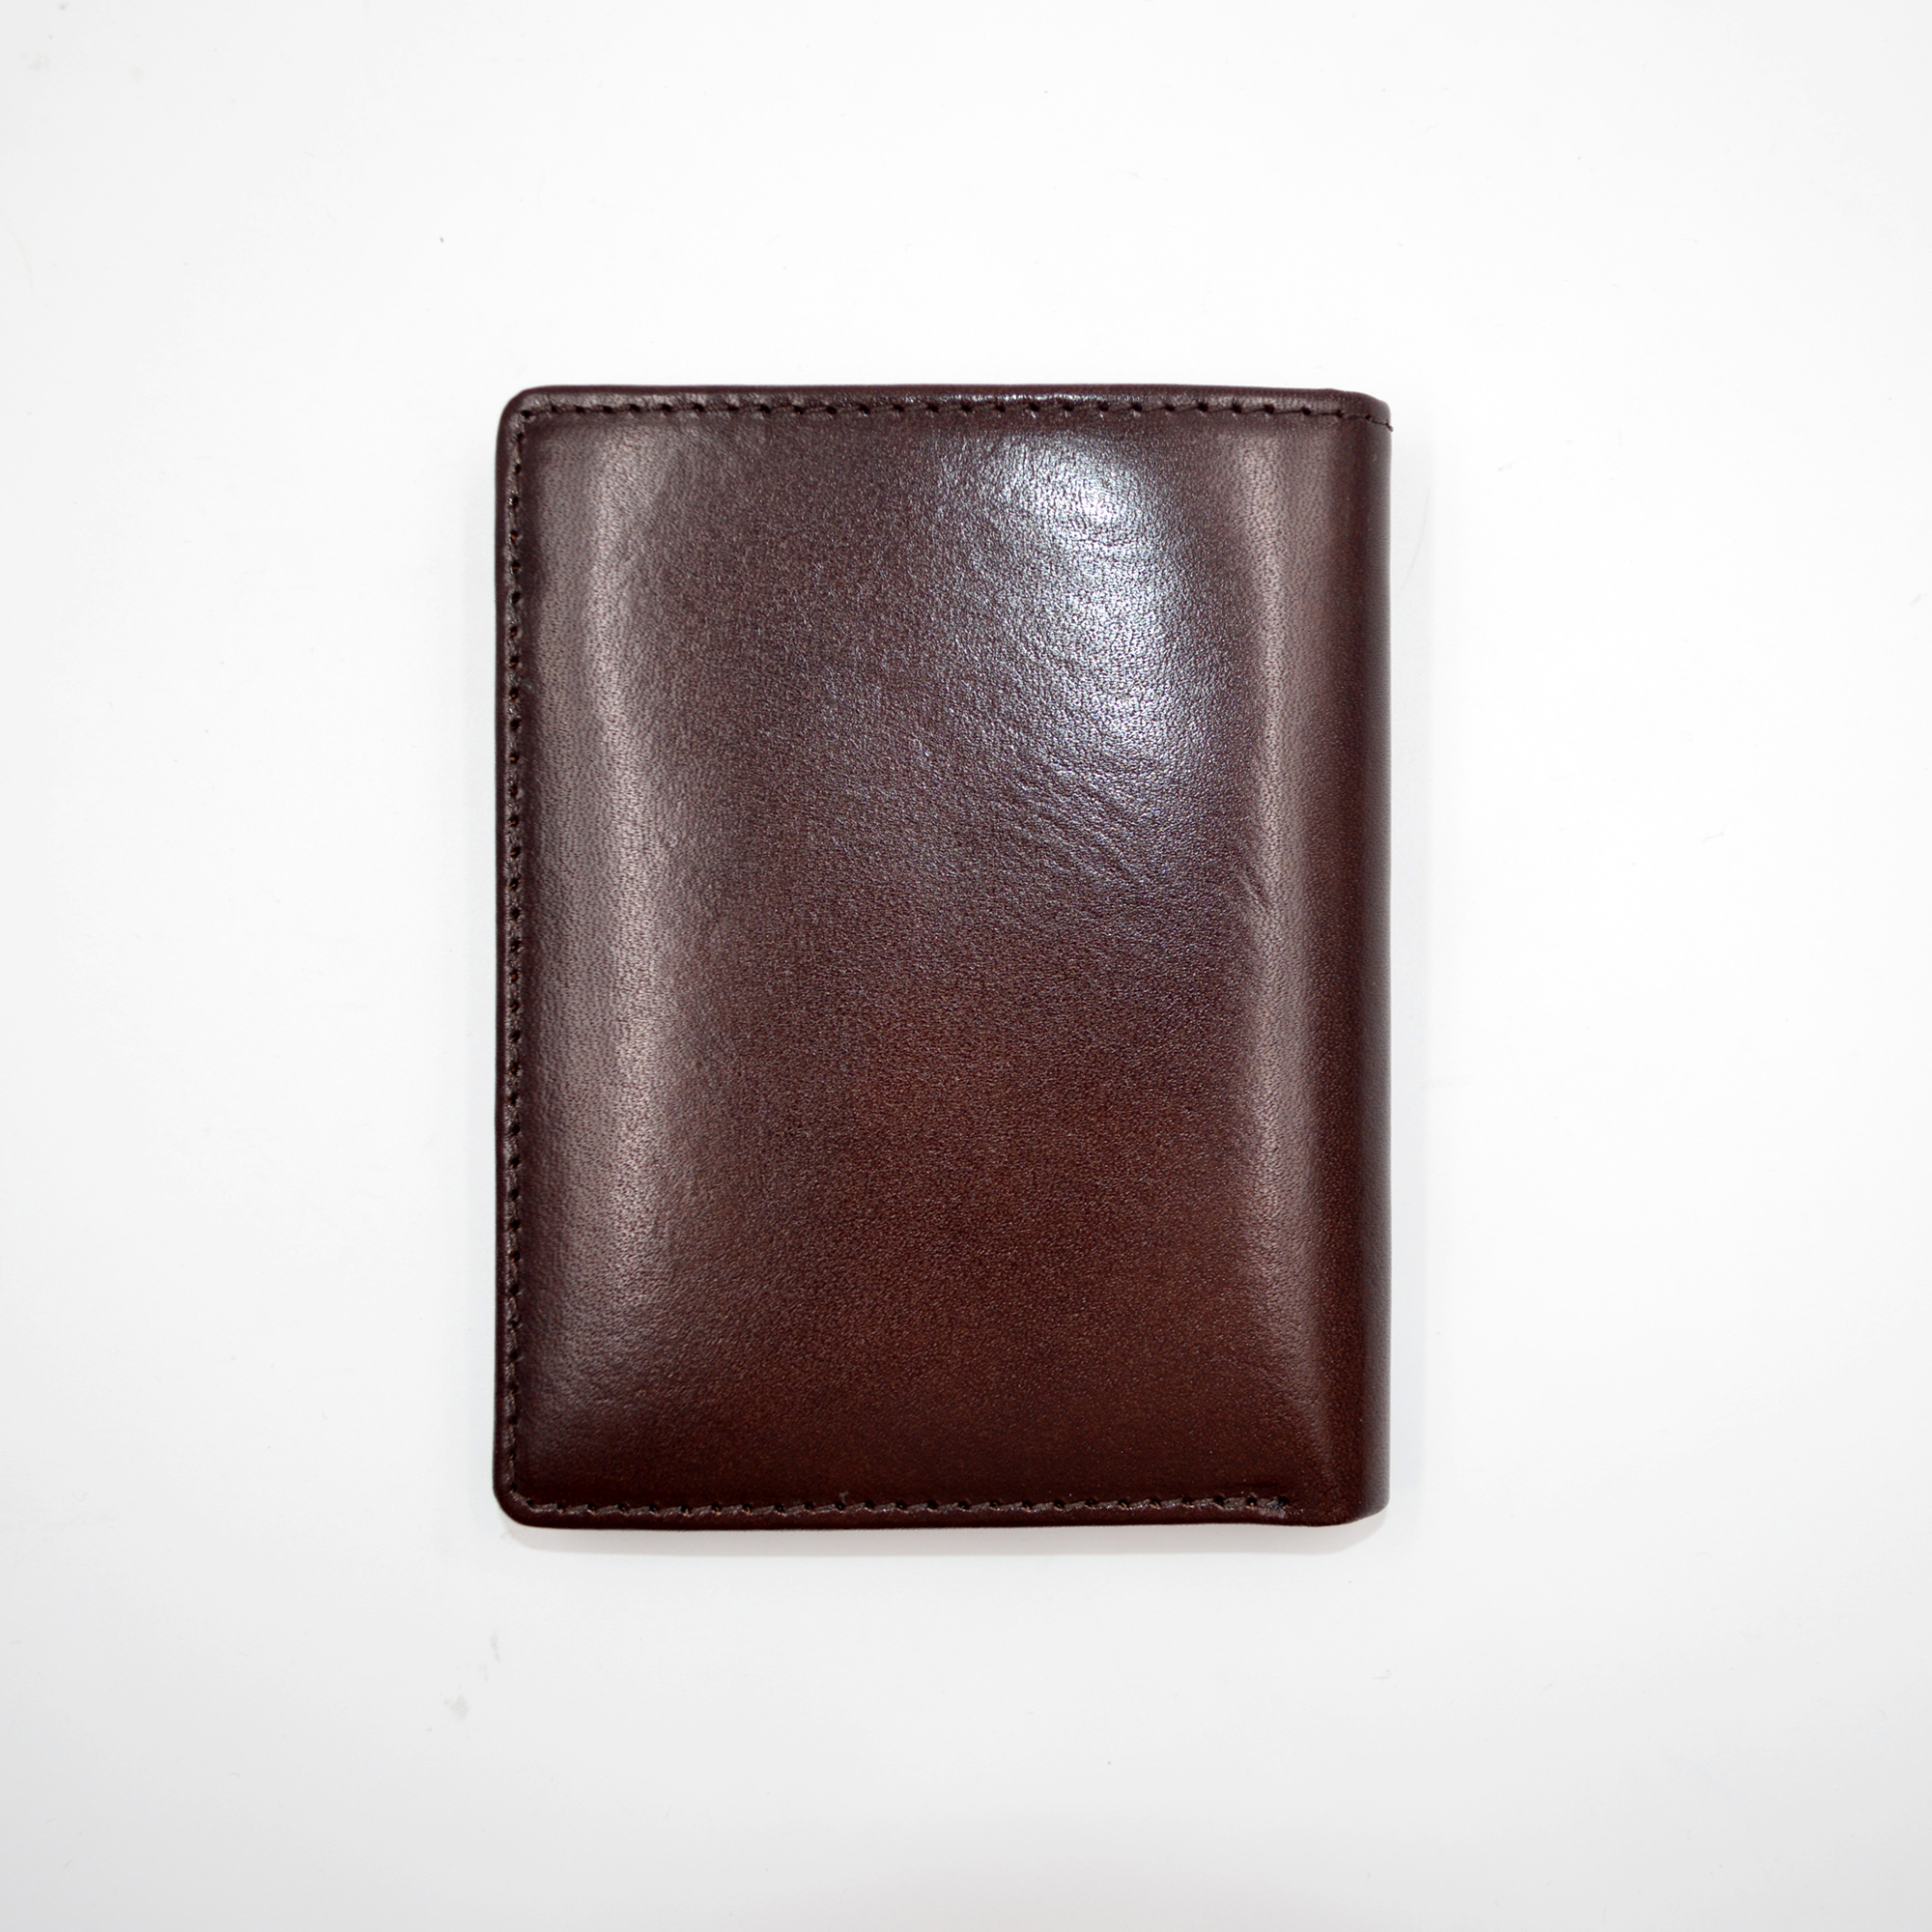 새로운 디자인 지갑 공장-새로운 디자인 지갑-새로운 디자인 지갑 공급 업체